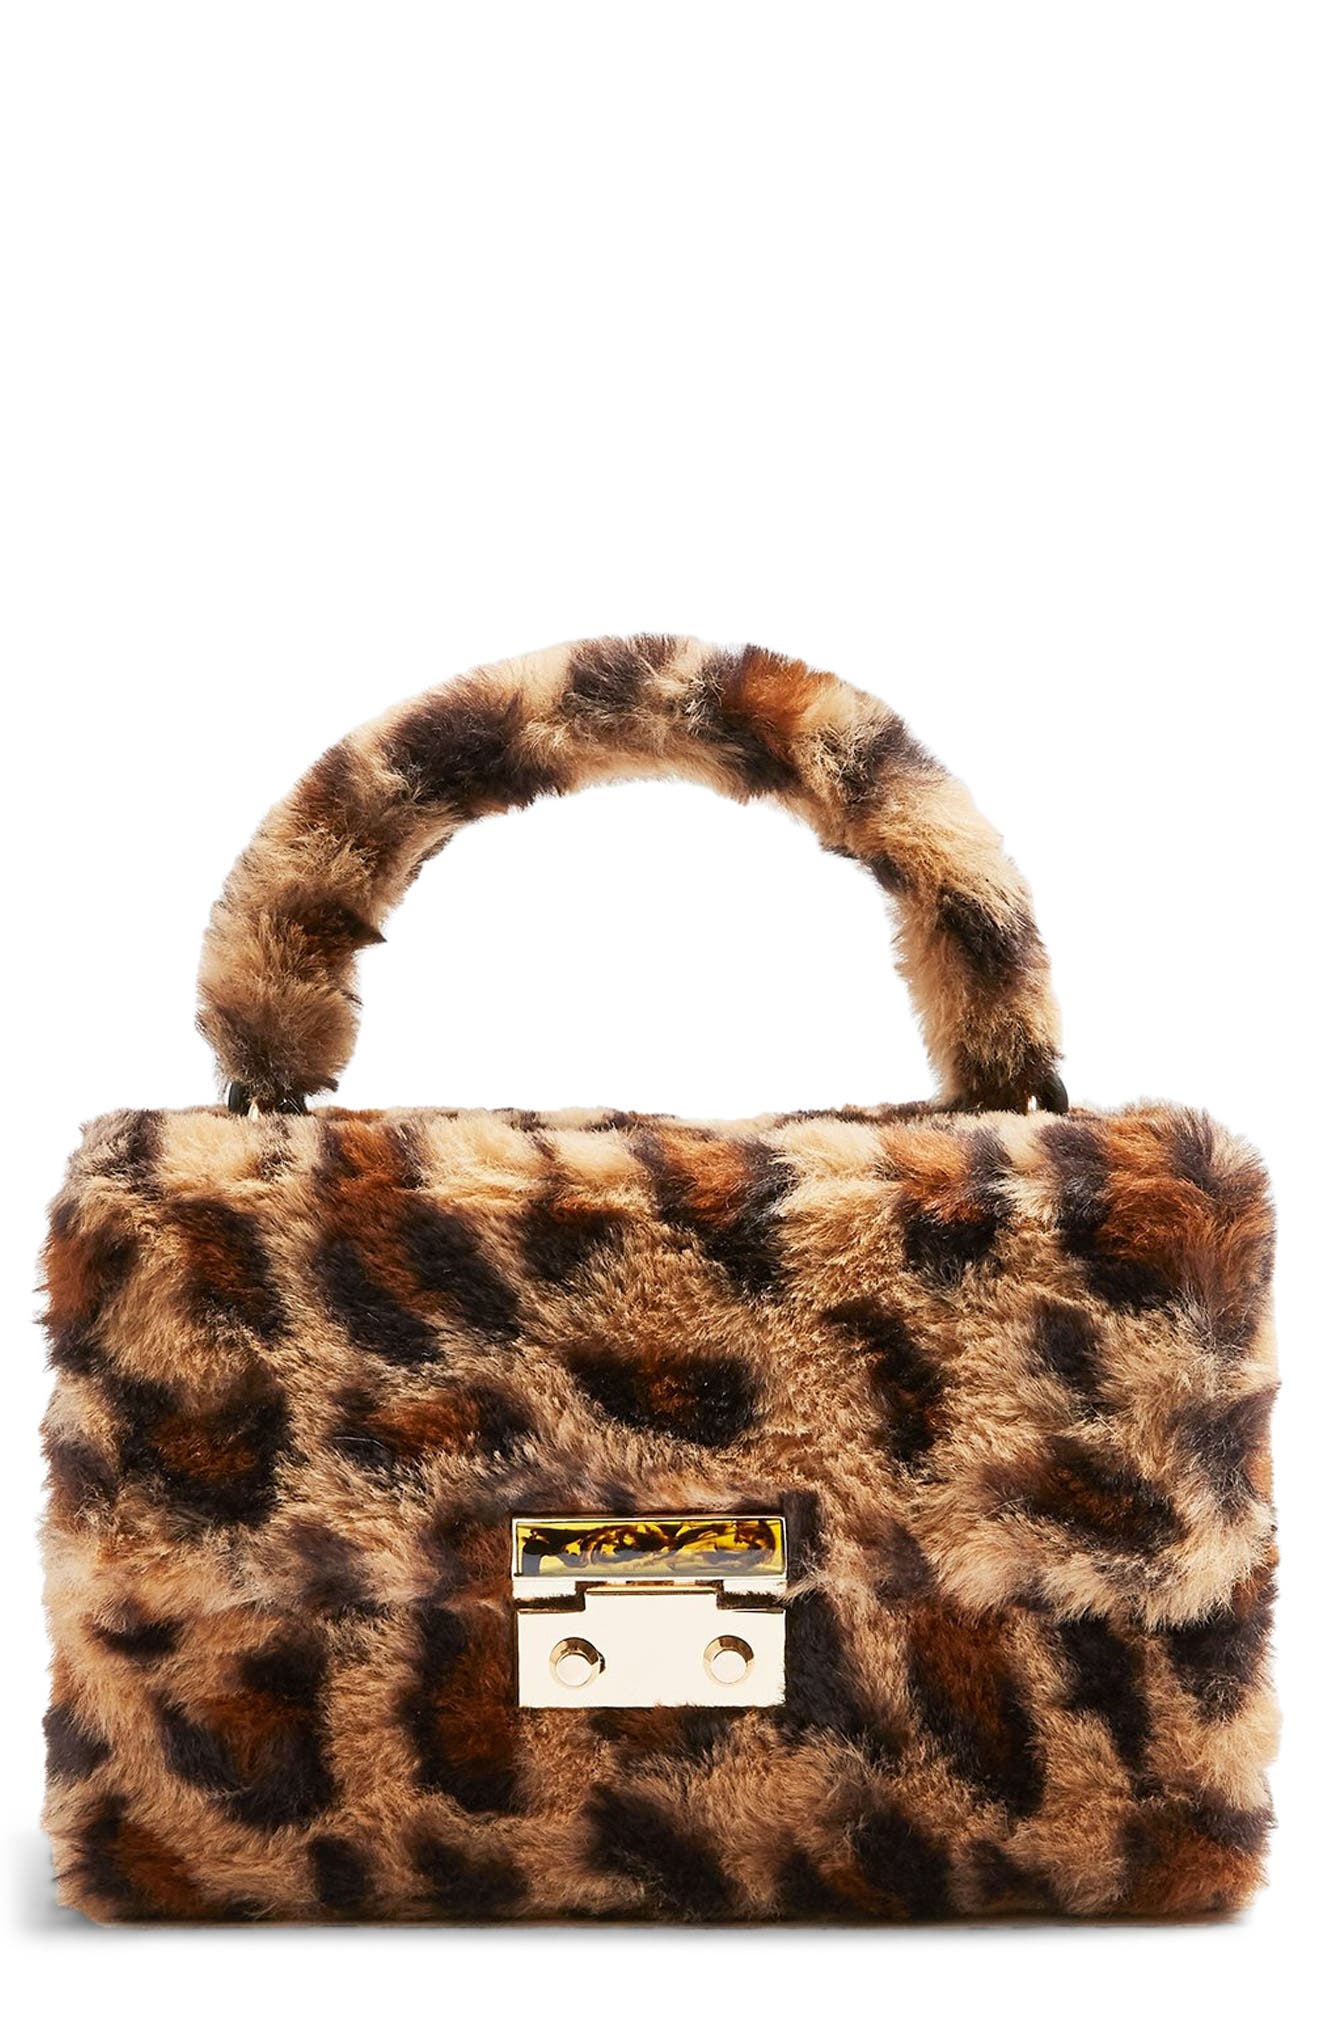 leopard fur bag topshop